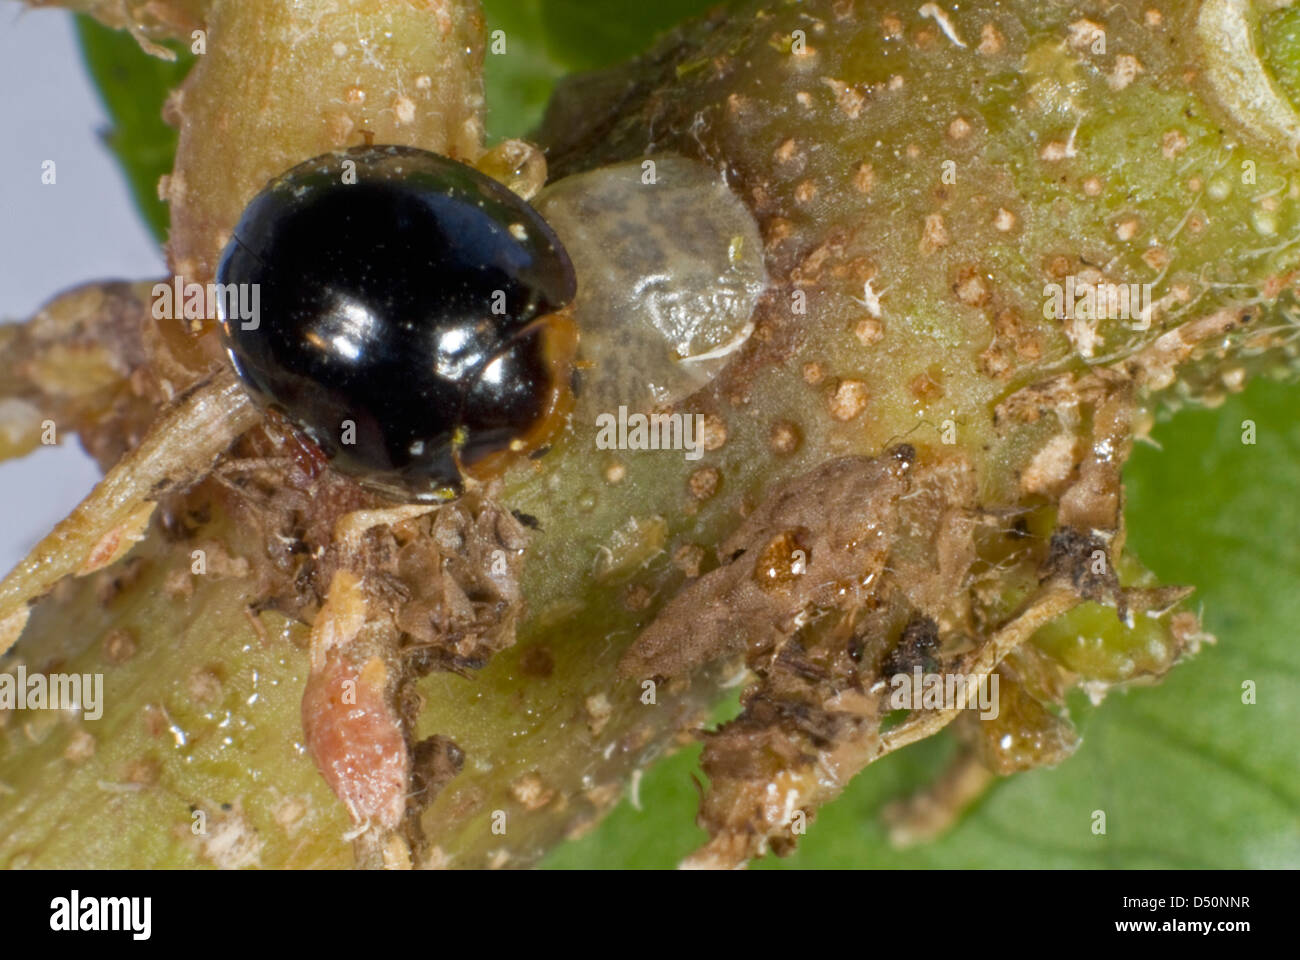 Un negro mariquita, Chilocorus nigritus, comercial control biológico depredador de insectos en cultivos protegidos Foto de stock